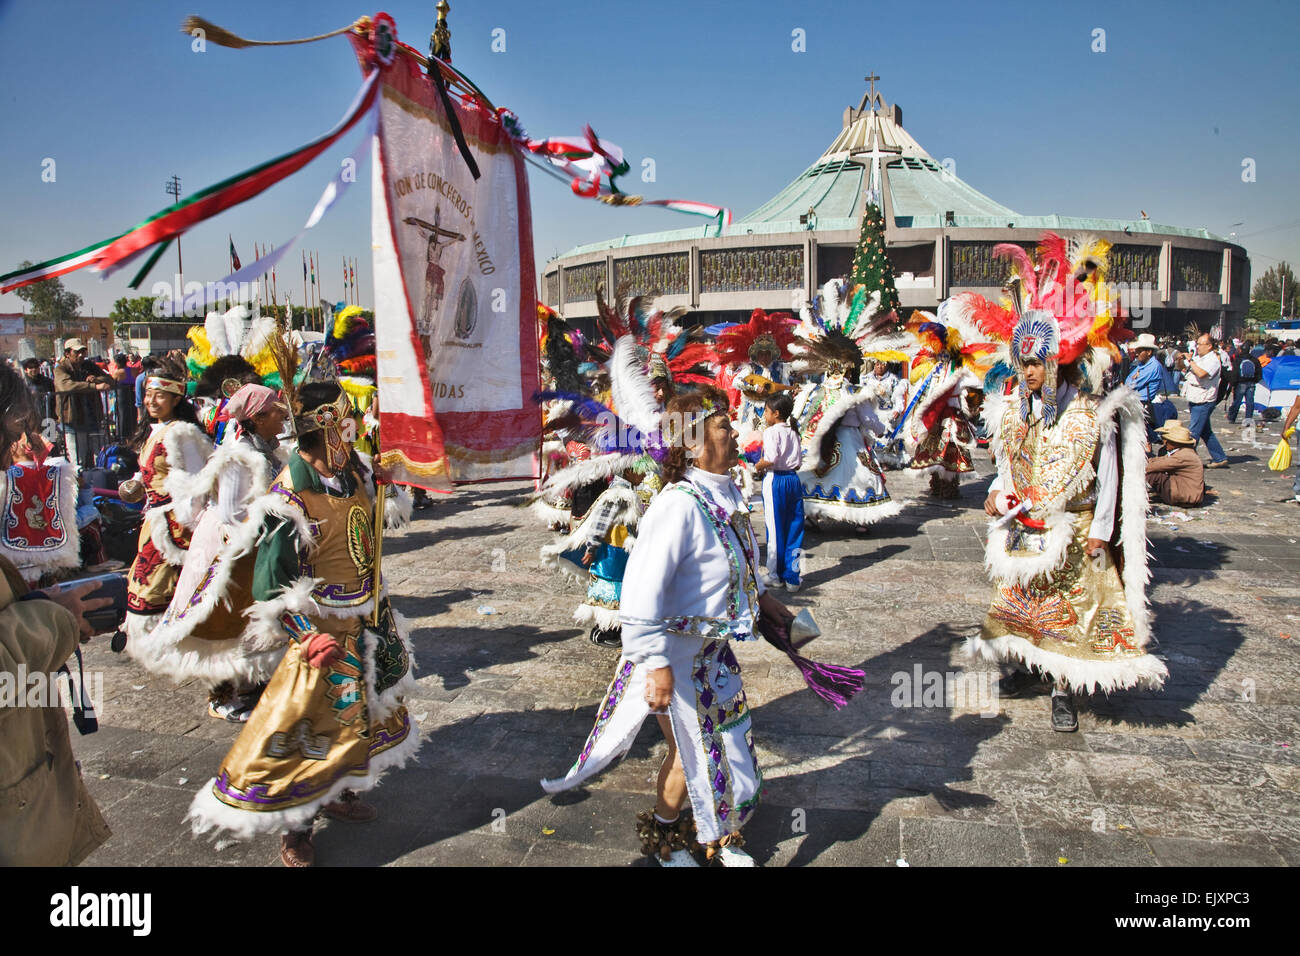 Habillés de couleurs vives et de pèlerins danseurs sont partout au cours de la célébration de la Vierge de Guadalupe Fête au Mexique Banque D'Images